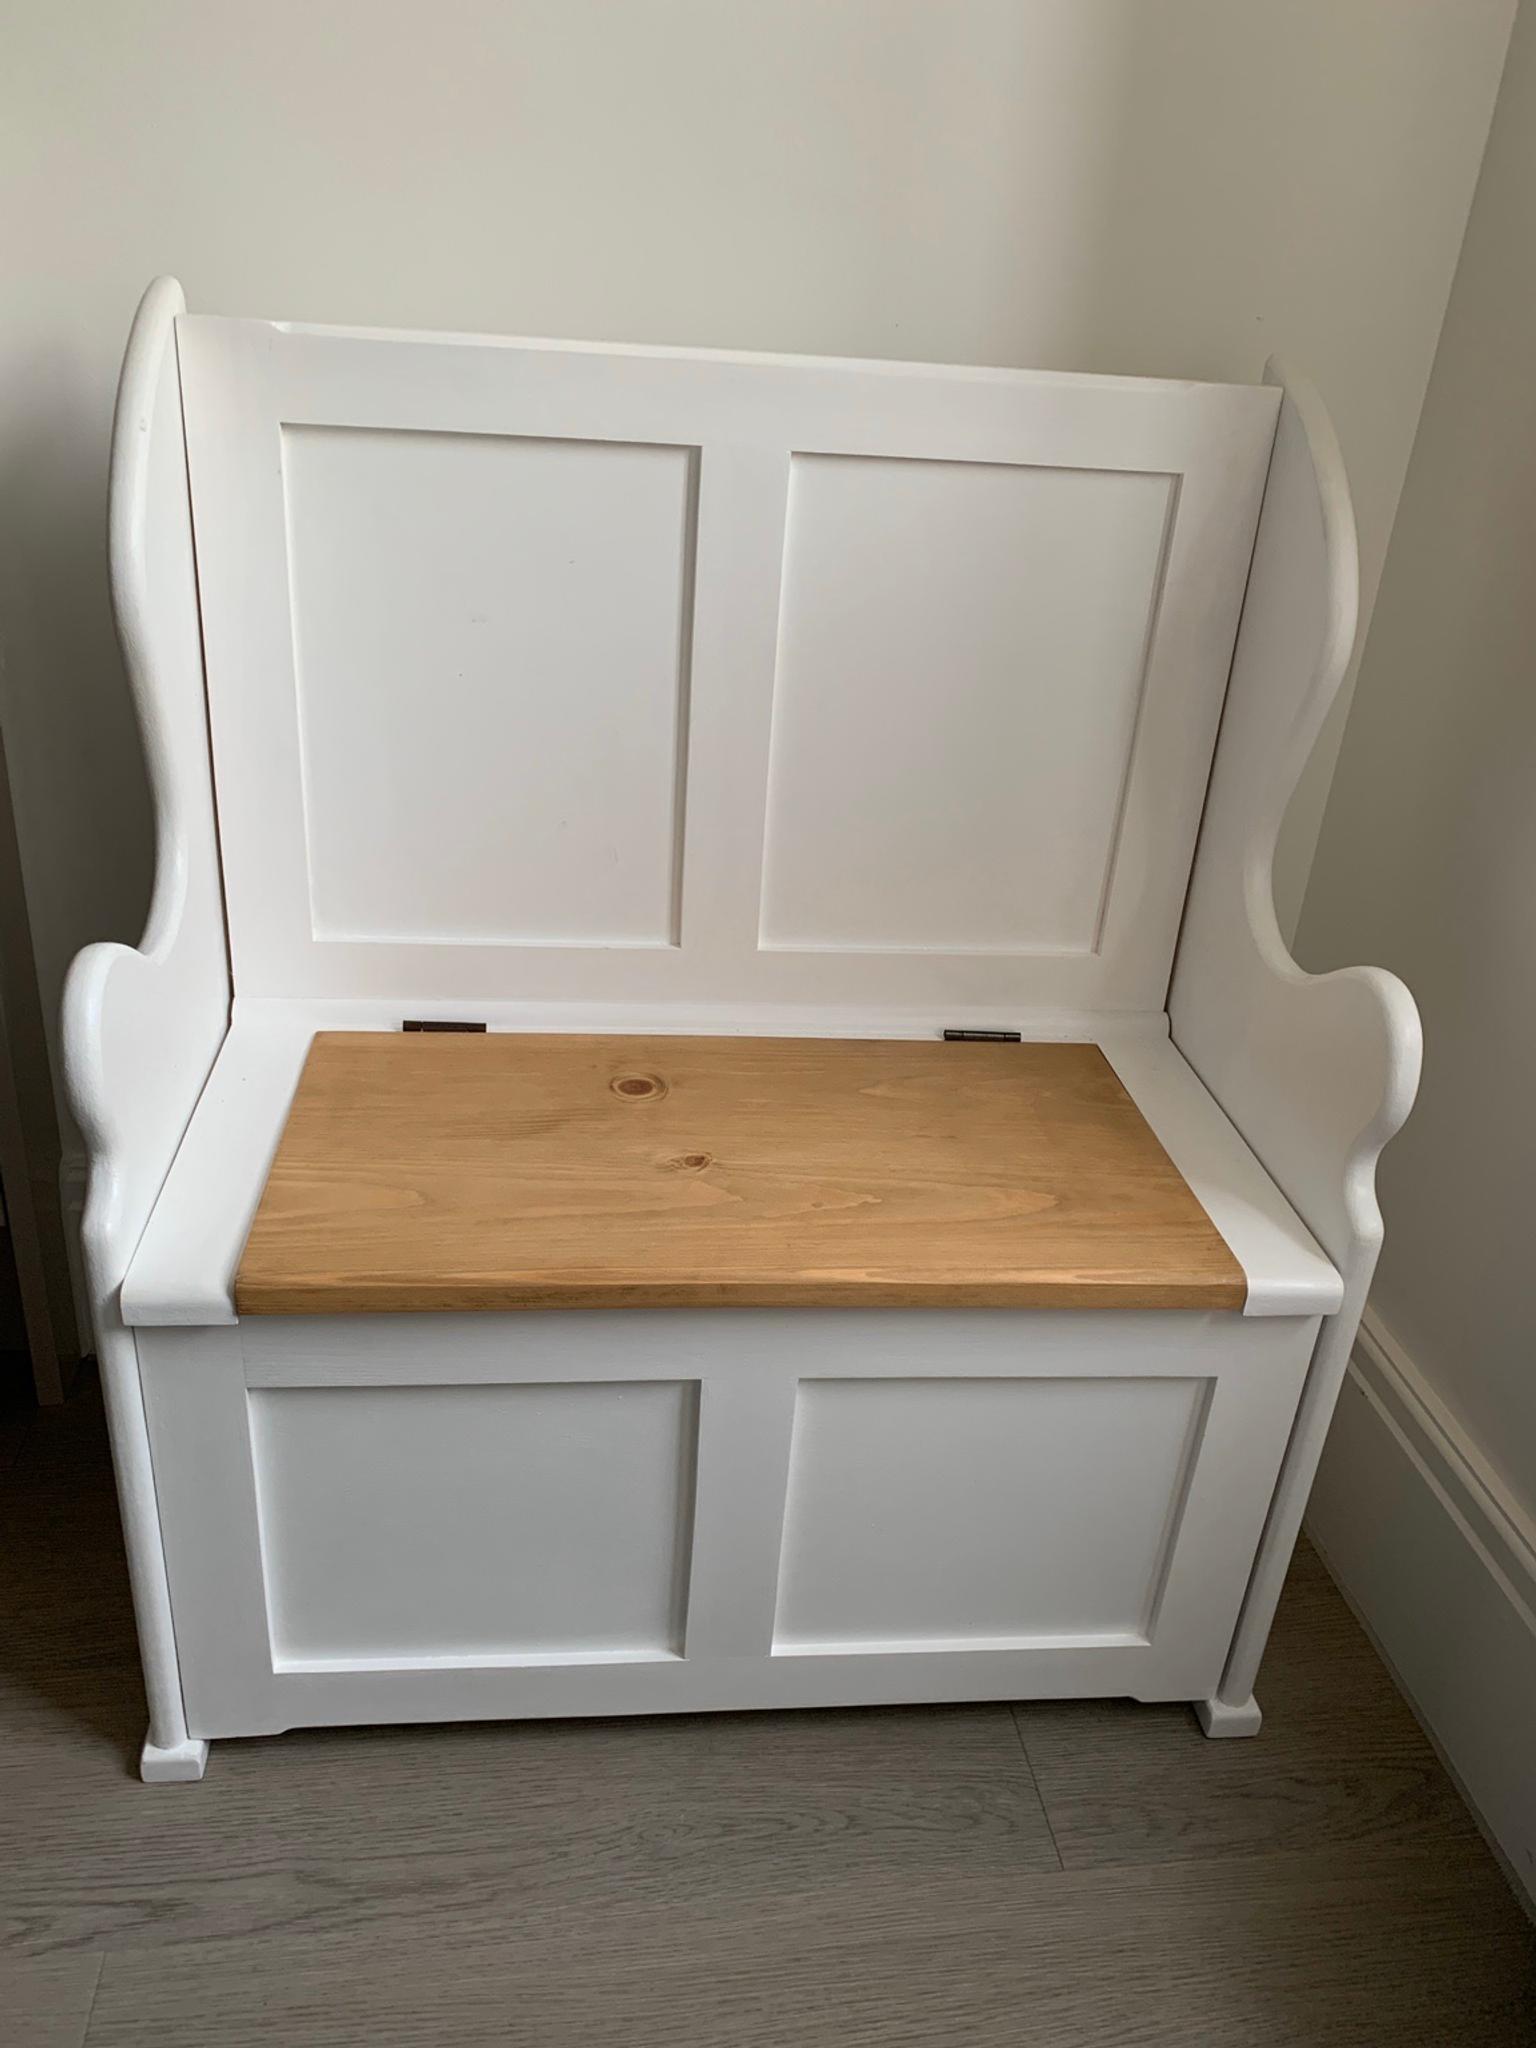 white wooden toy box seat